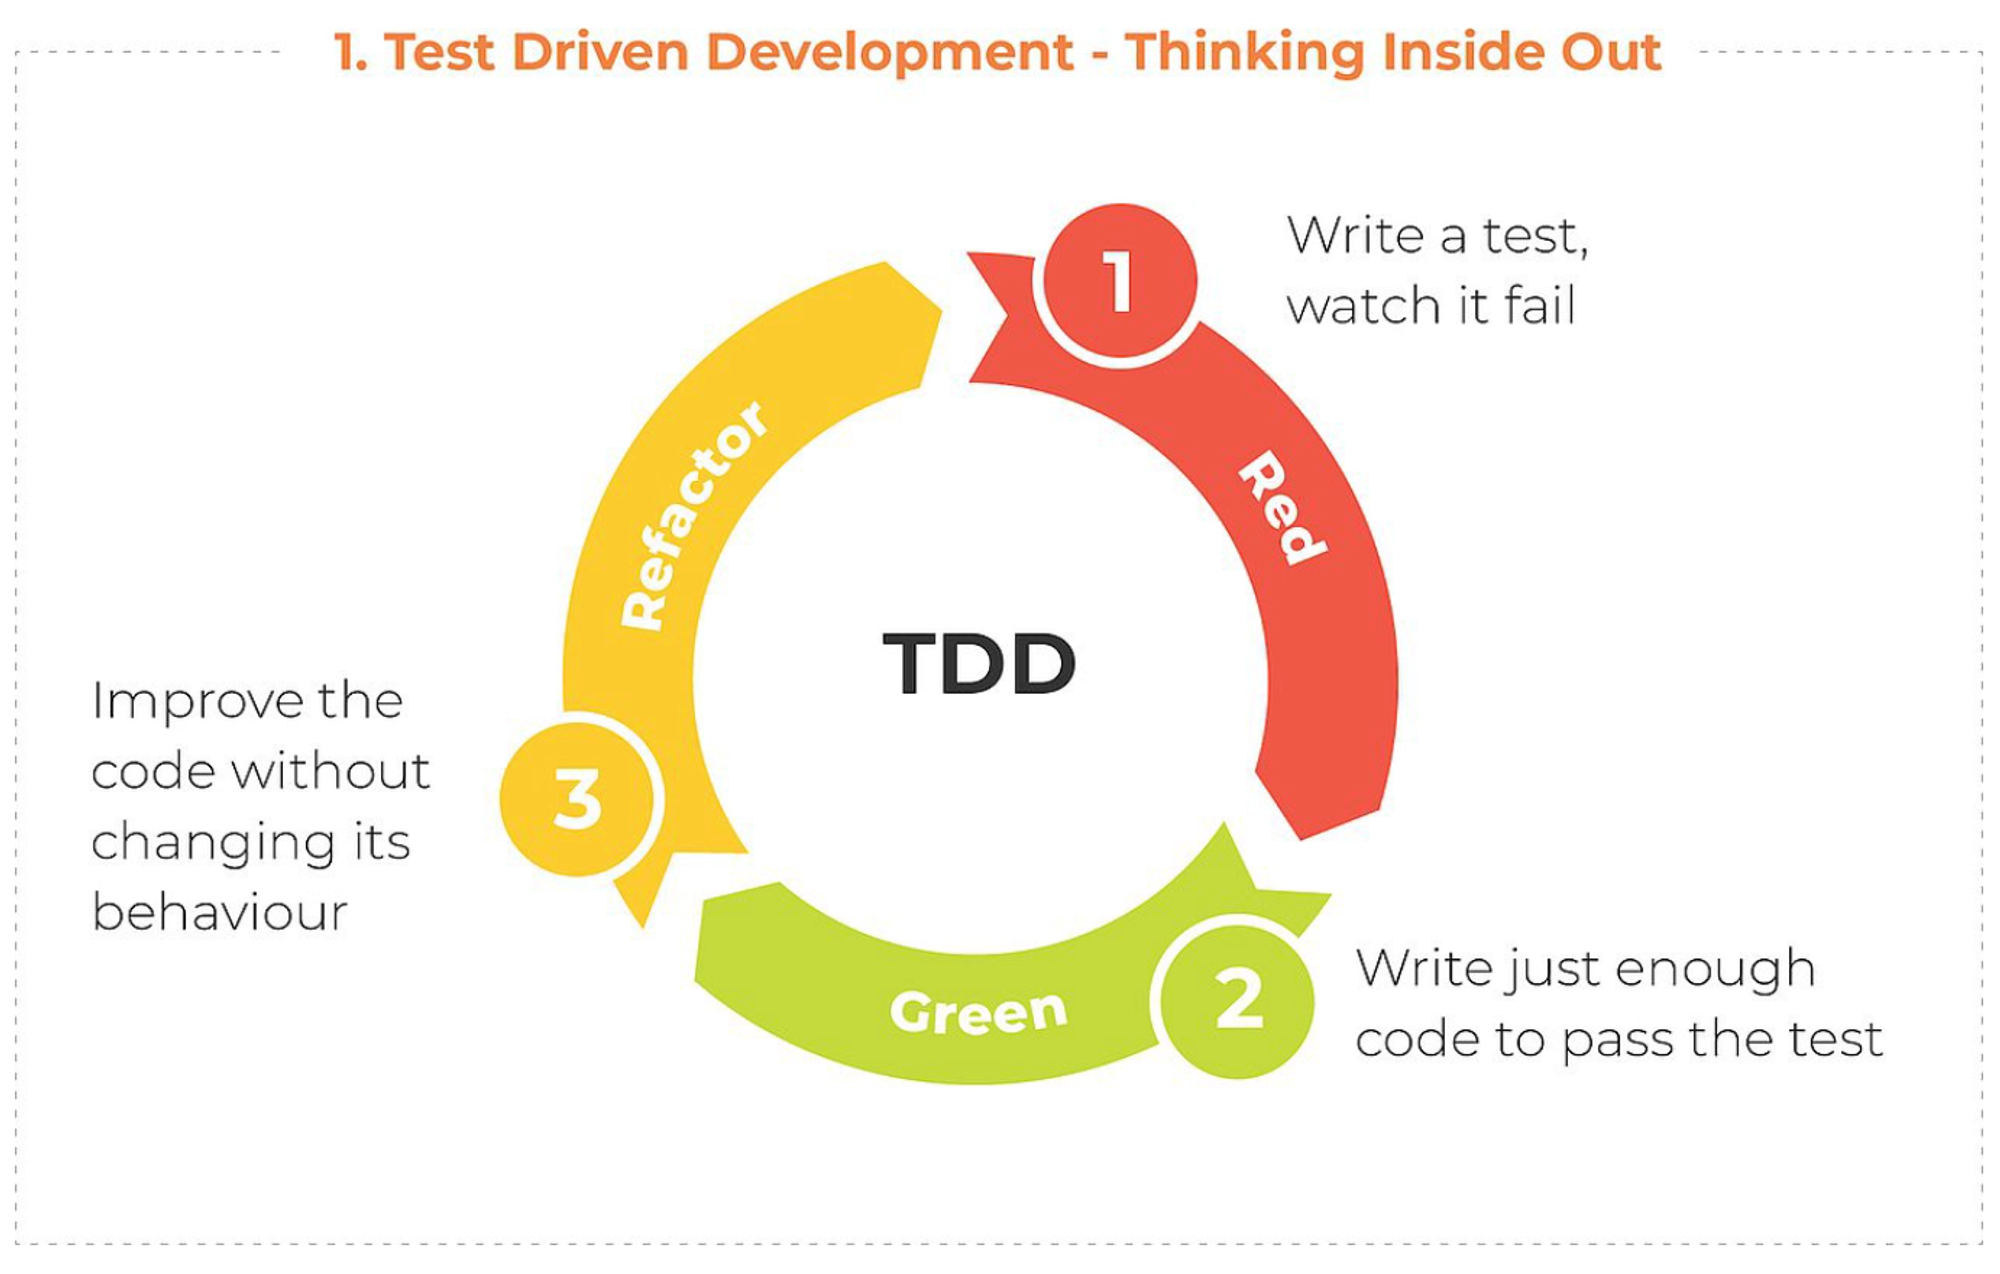 Testing improve. Разработка через тестирование. TDD тестирование. Test Driven Development. TDD методология.